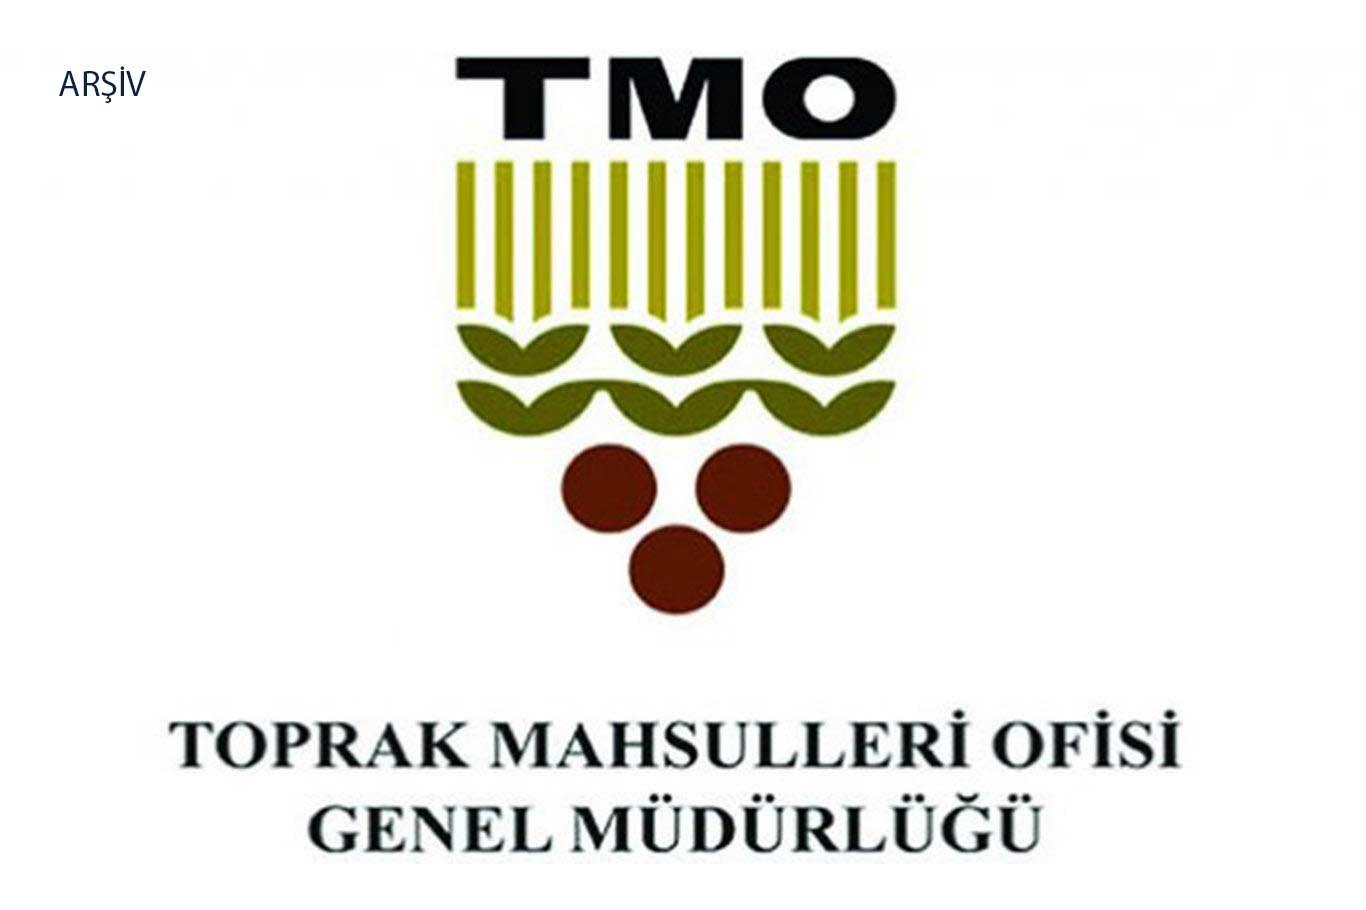 T me holding tmo. TMO. Логотип ТМО. TMO Superevents. MITIS TMO.